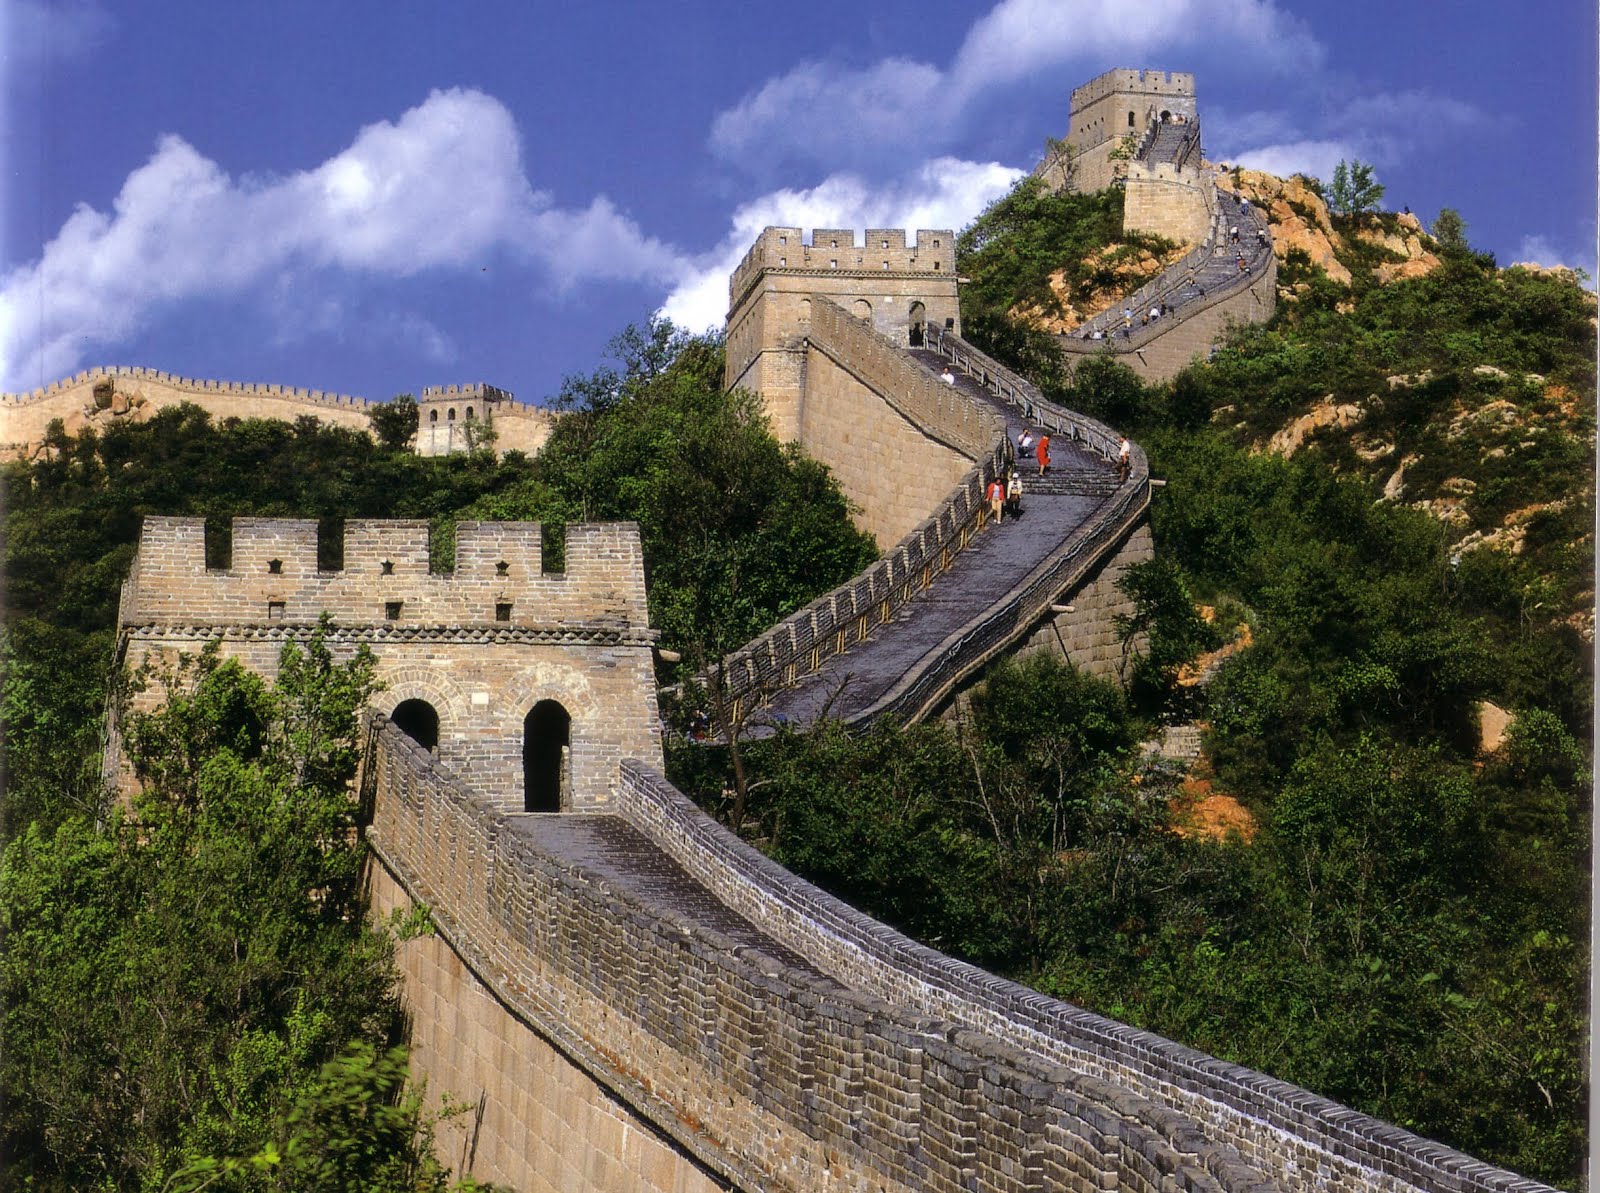 (ไม่ลงร้านช้อป) ทัวร์เอเชีย จีน ปักกิ่ง กำแพงเมืองจีน พระราชวังกู้กง ถ้ำดอกไม้หิน 5วัน 4คืน สายการบินการบินไทย (TG)